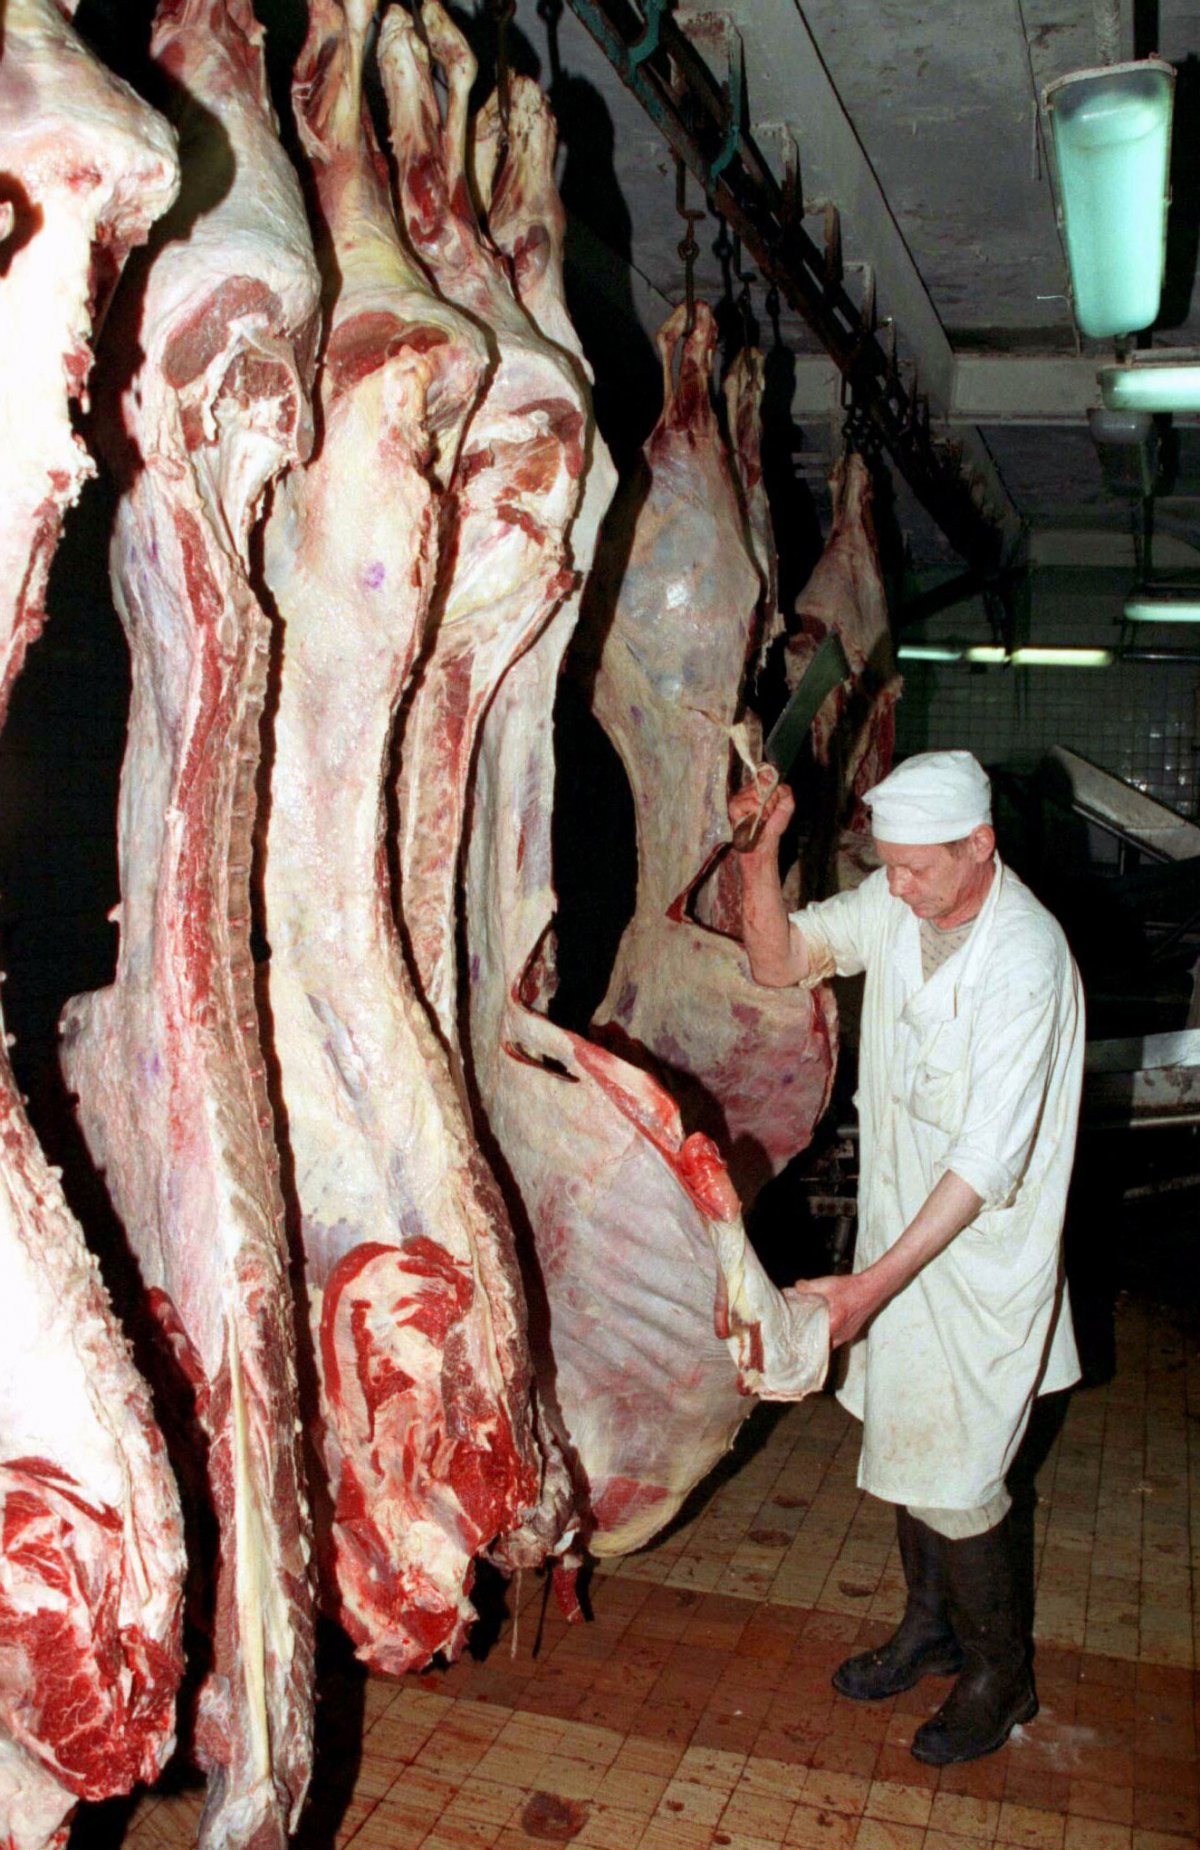 Reuters / Un macellaio russo taglia della carne importata in un macello moscovita, marzo 1996